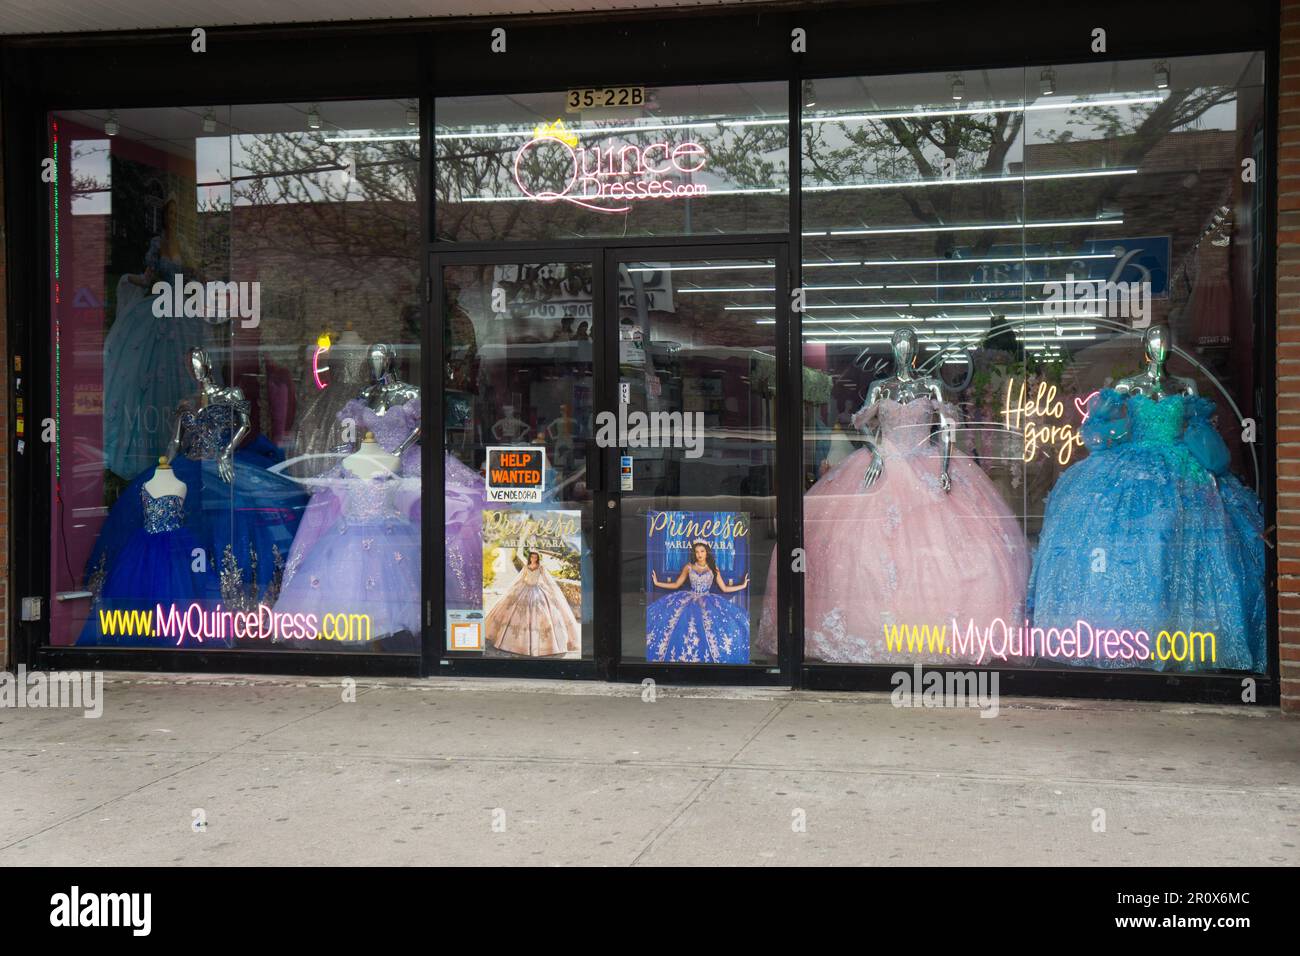 Außenansicht von Quinceaneras, einem Geschäft, das Kleidung für das südamerikanische Ritual zum 15. Geburtstag eines Mädchens und dessen Übergang zur Frau verkauft. Corona, Königinnen Stockfoto